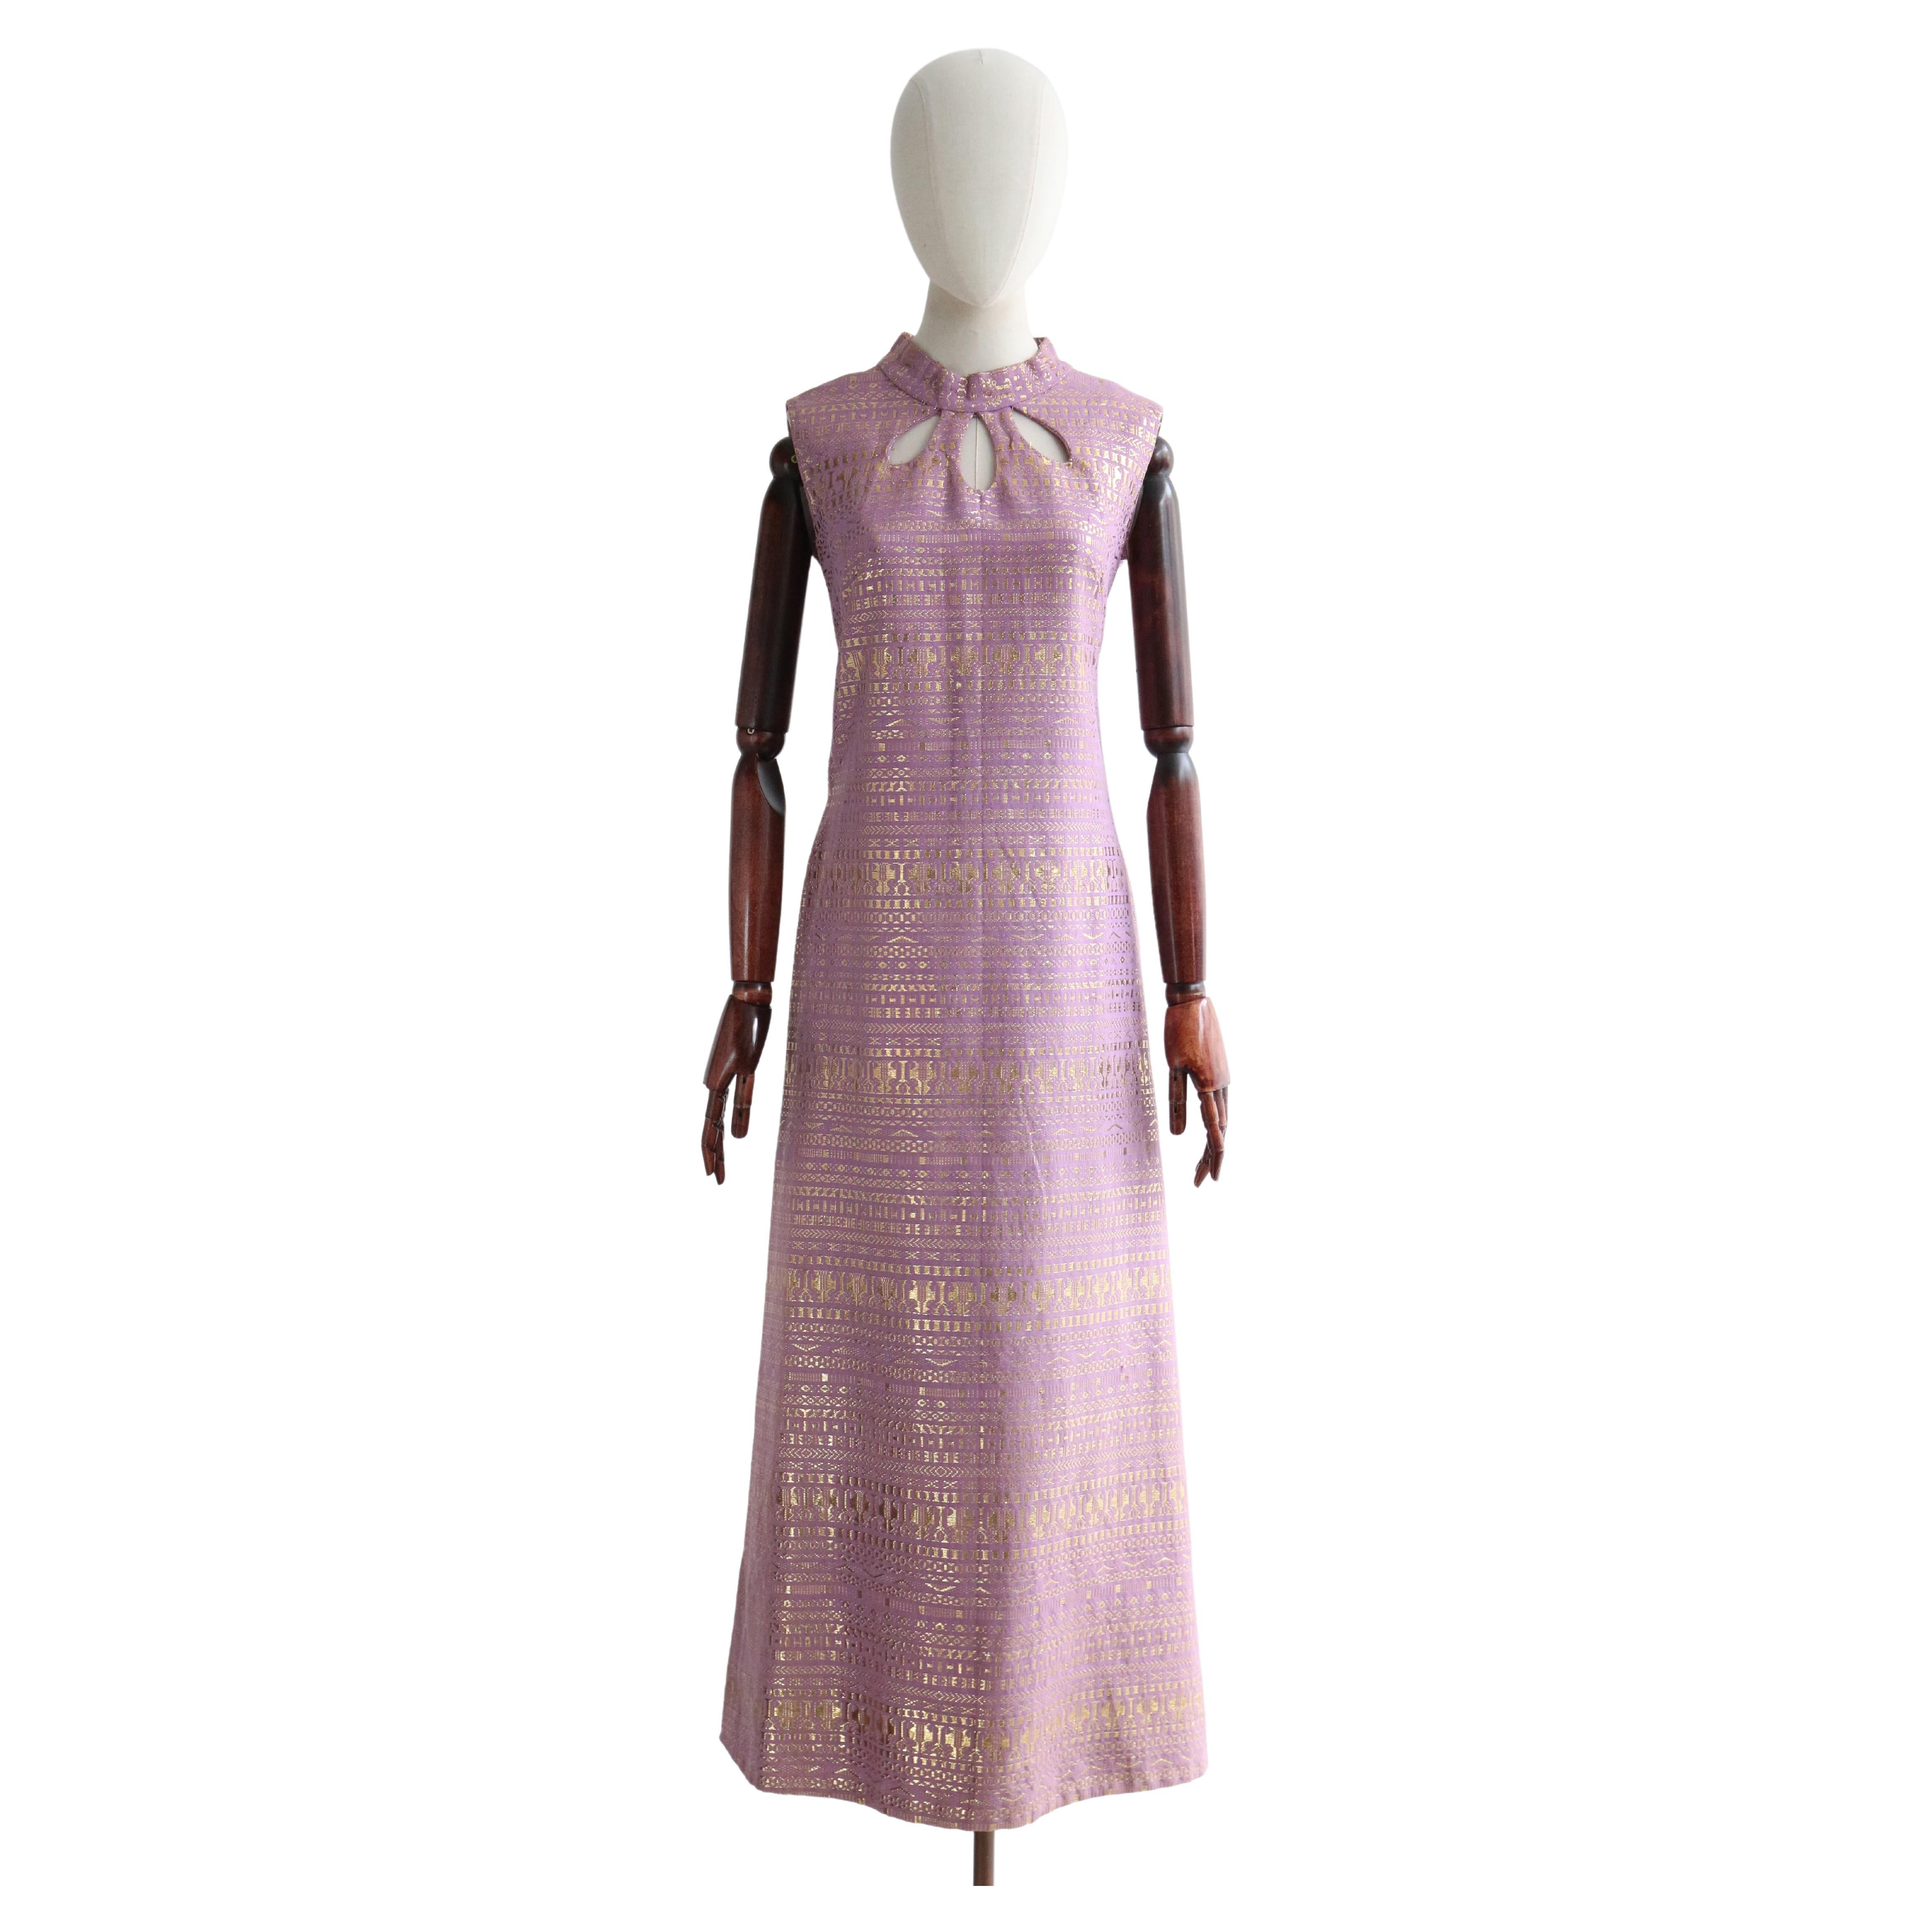 Robe vintage en lurex lilas et or avec trou de serrure (années 1960), taille UK 12-14 US 8-10 en vente